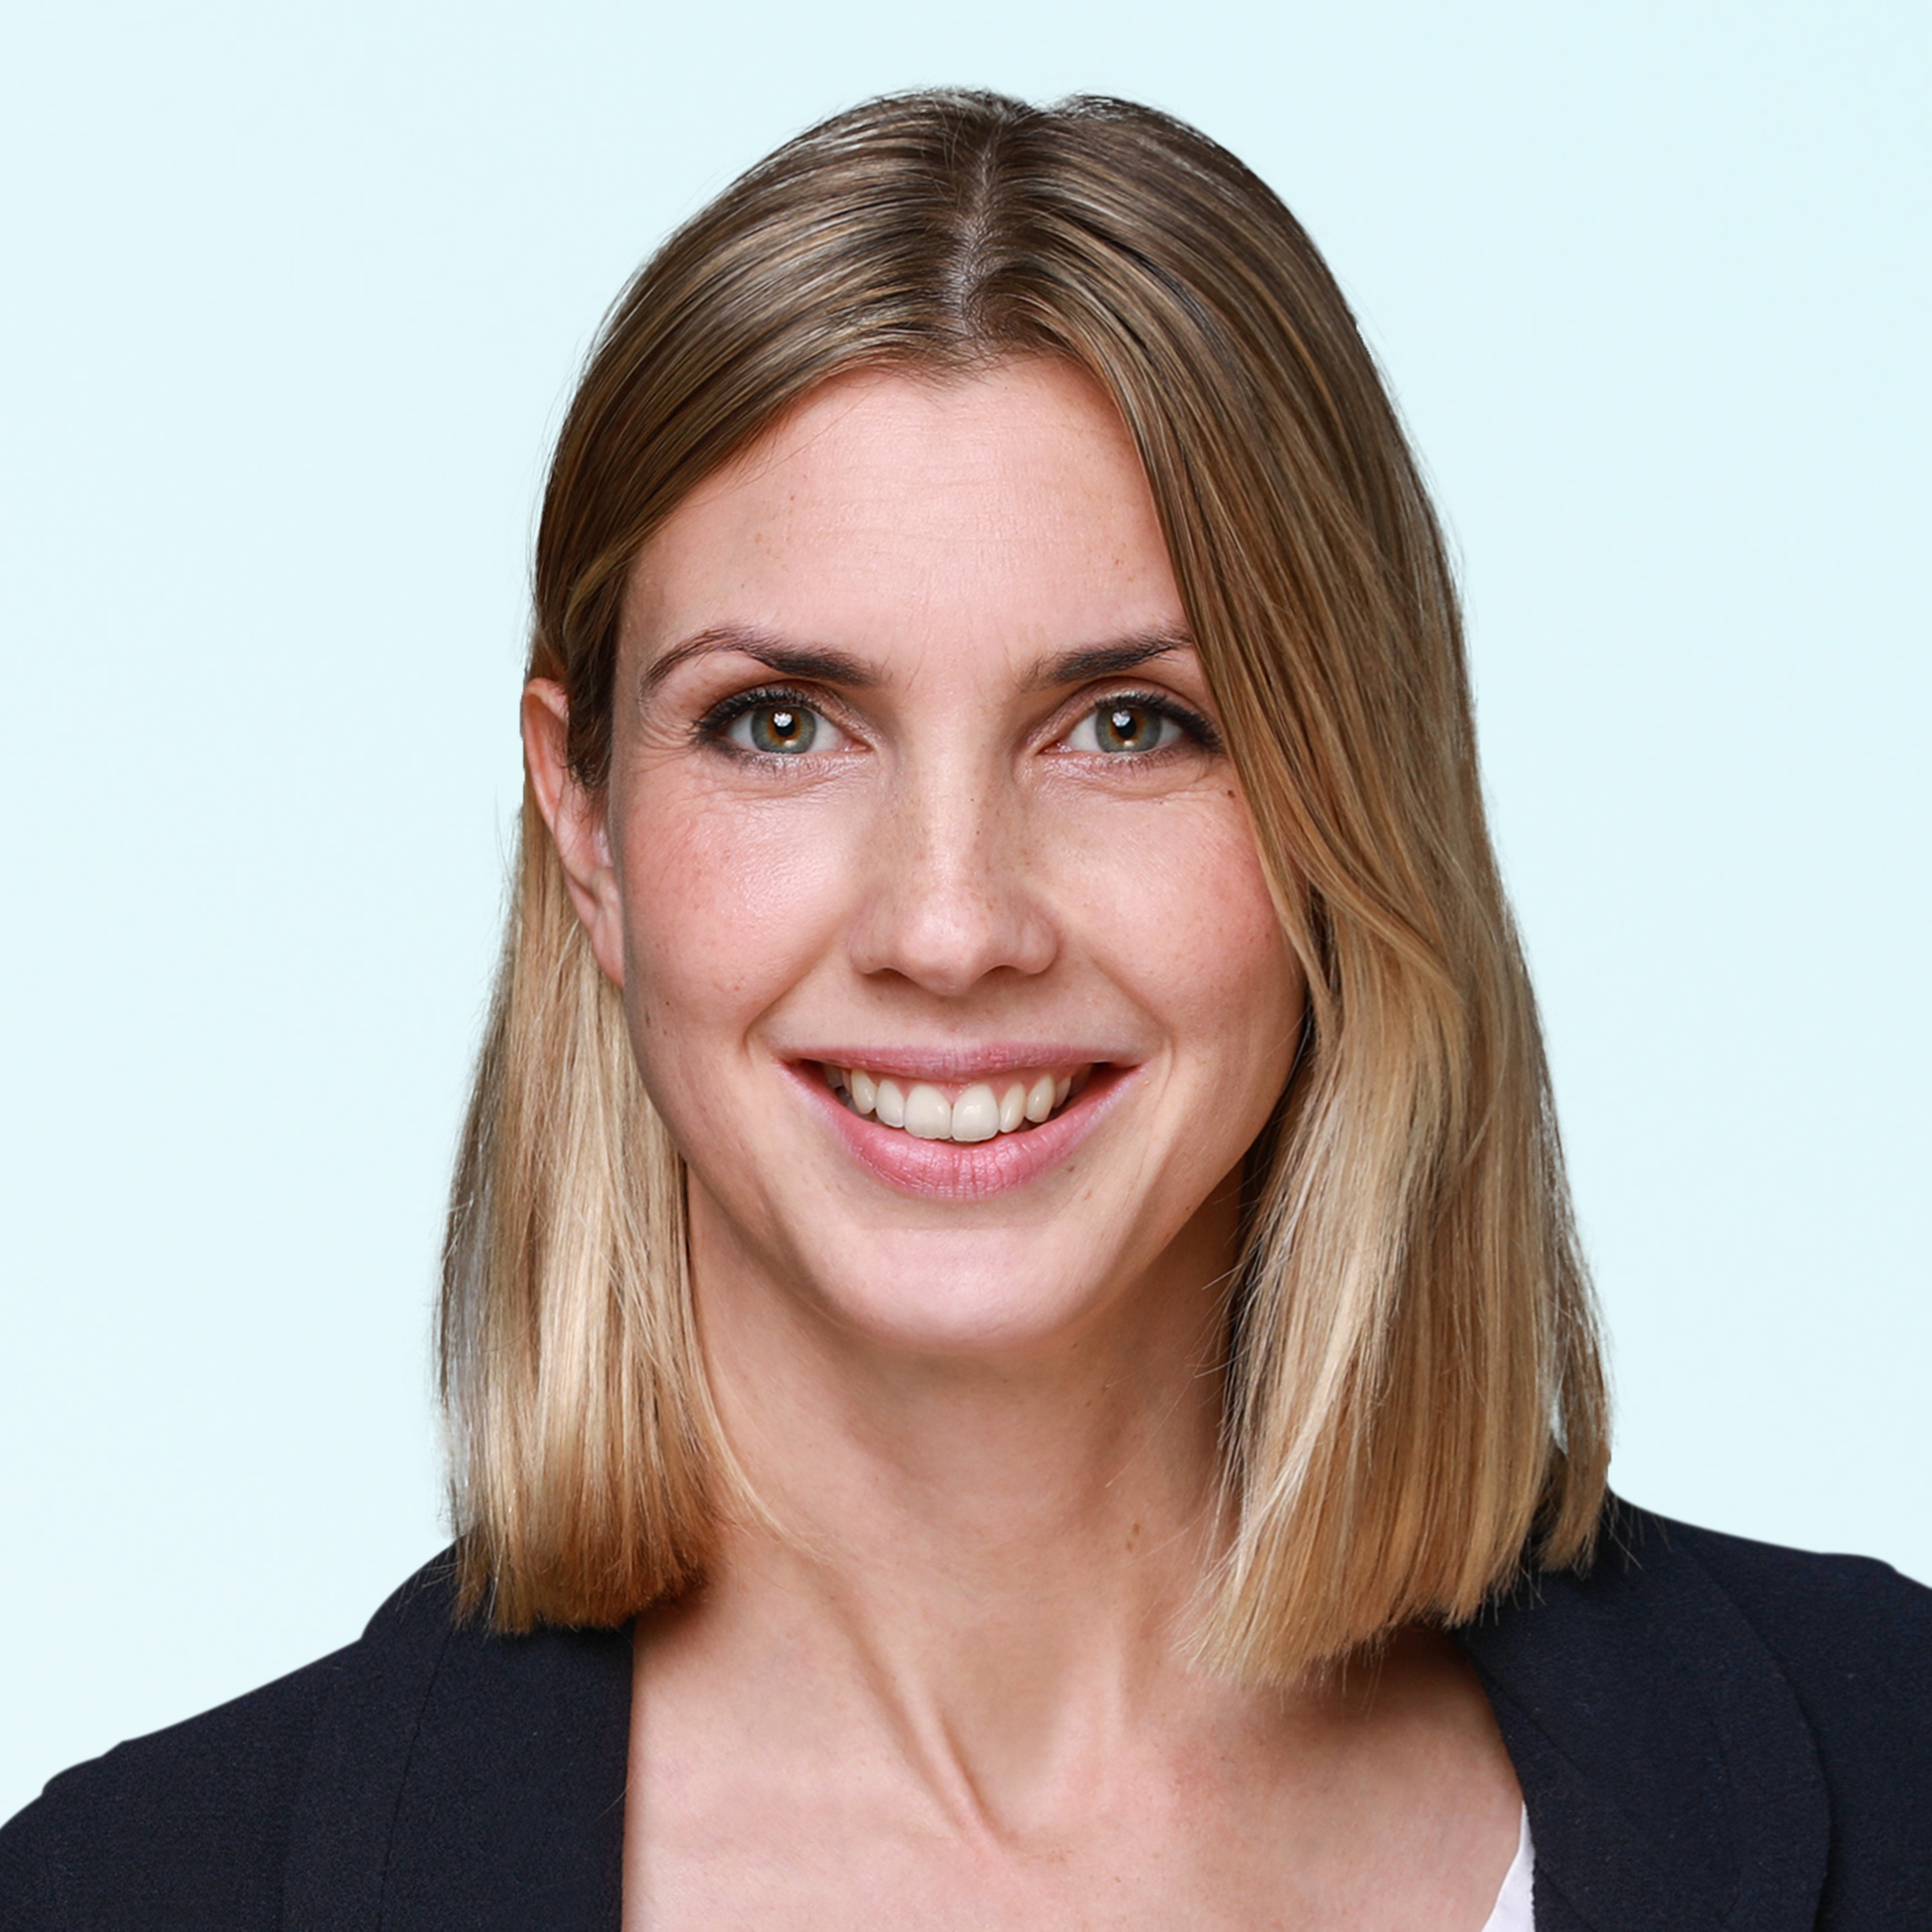 Dermatologist, Dr. med. Elisa Rodewyk